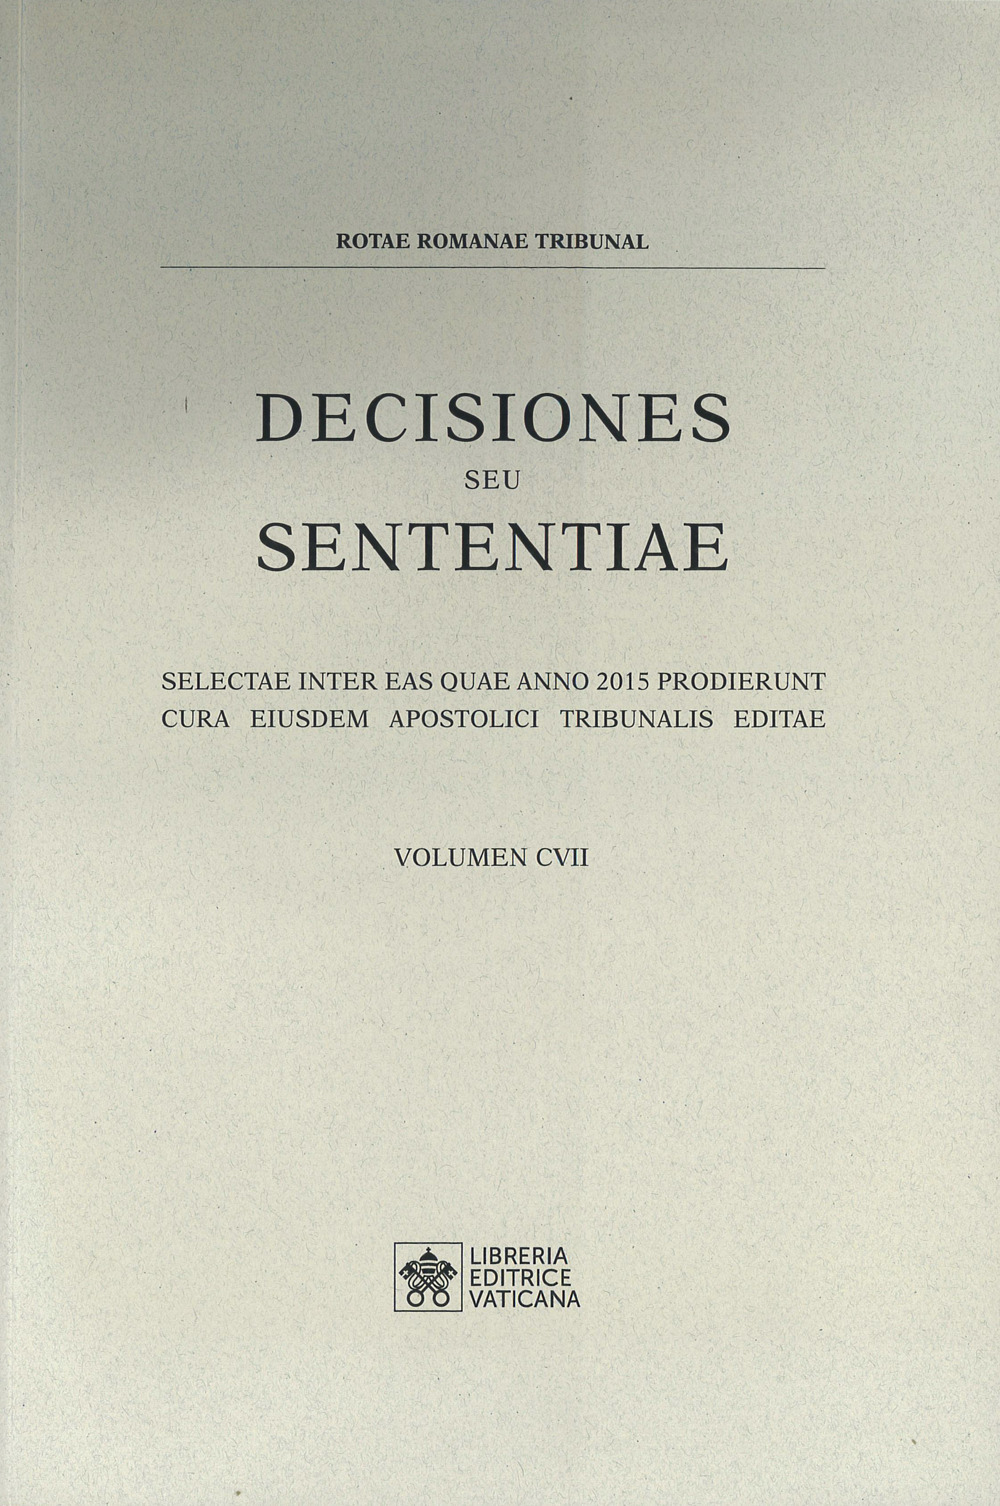 Decisiones seu sententiae. Selectae inter eas quae anno 2015 prodierunt cura eiusdem apostolici tribunalis editae. Vol. 107